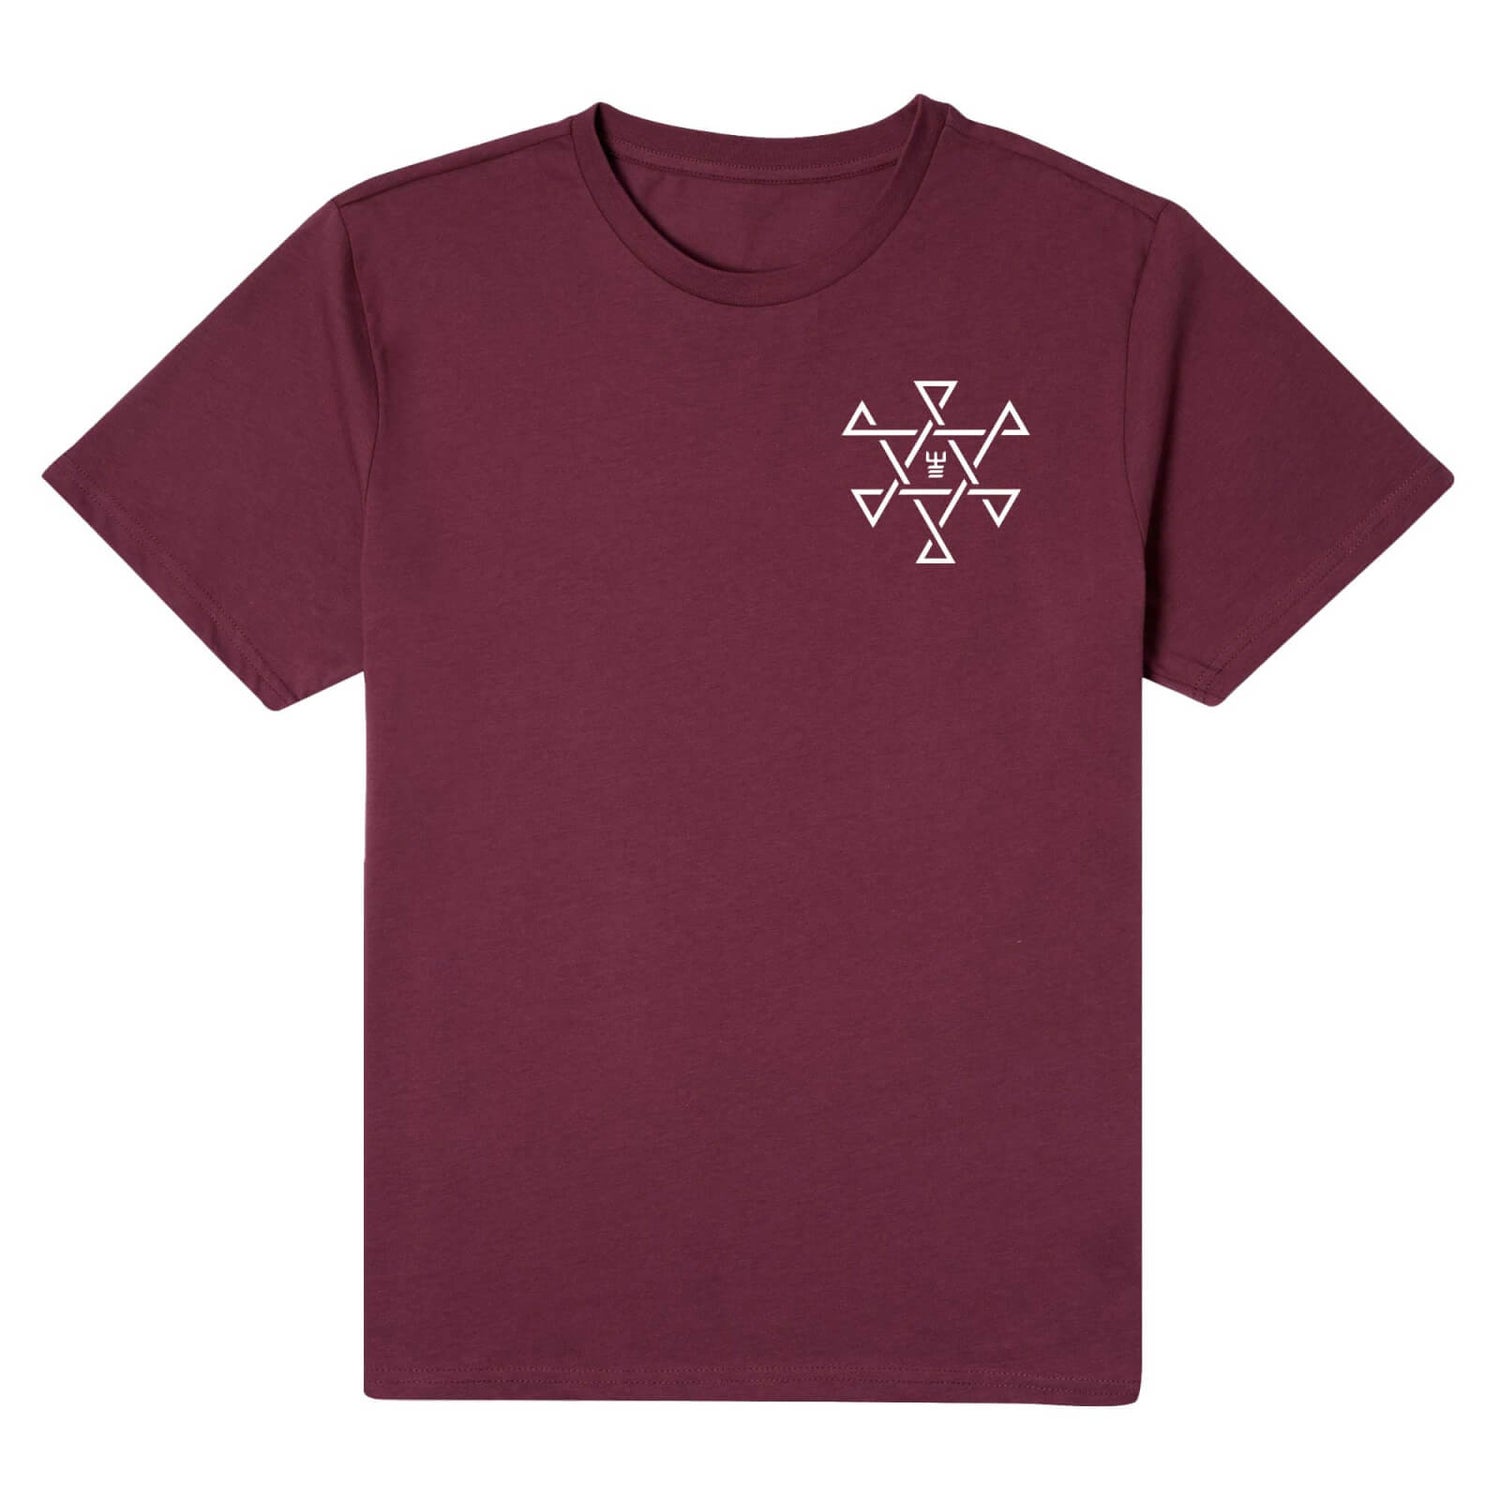 Tribes of Midgard Valhalla Men's T-Shirt - Burgundy